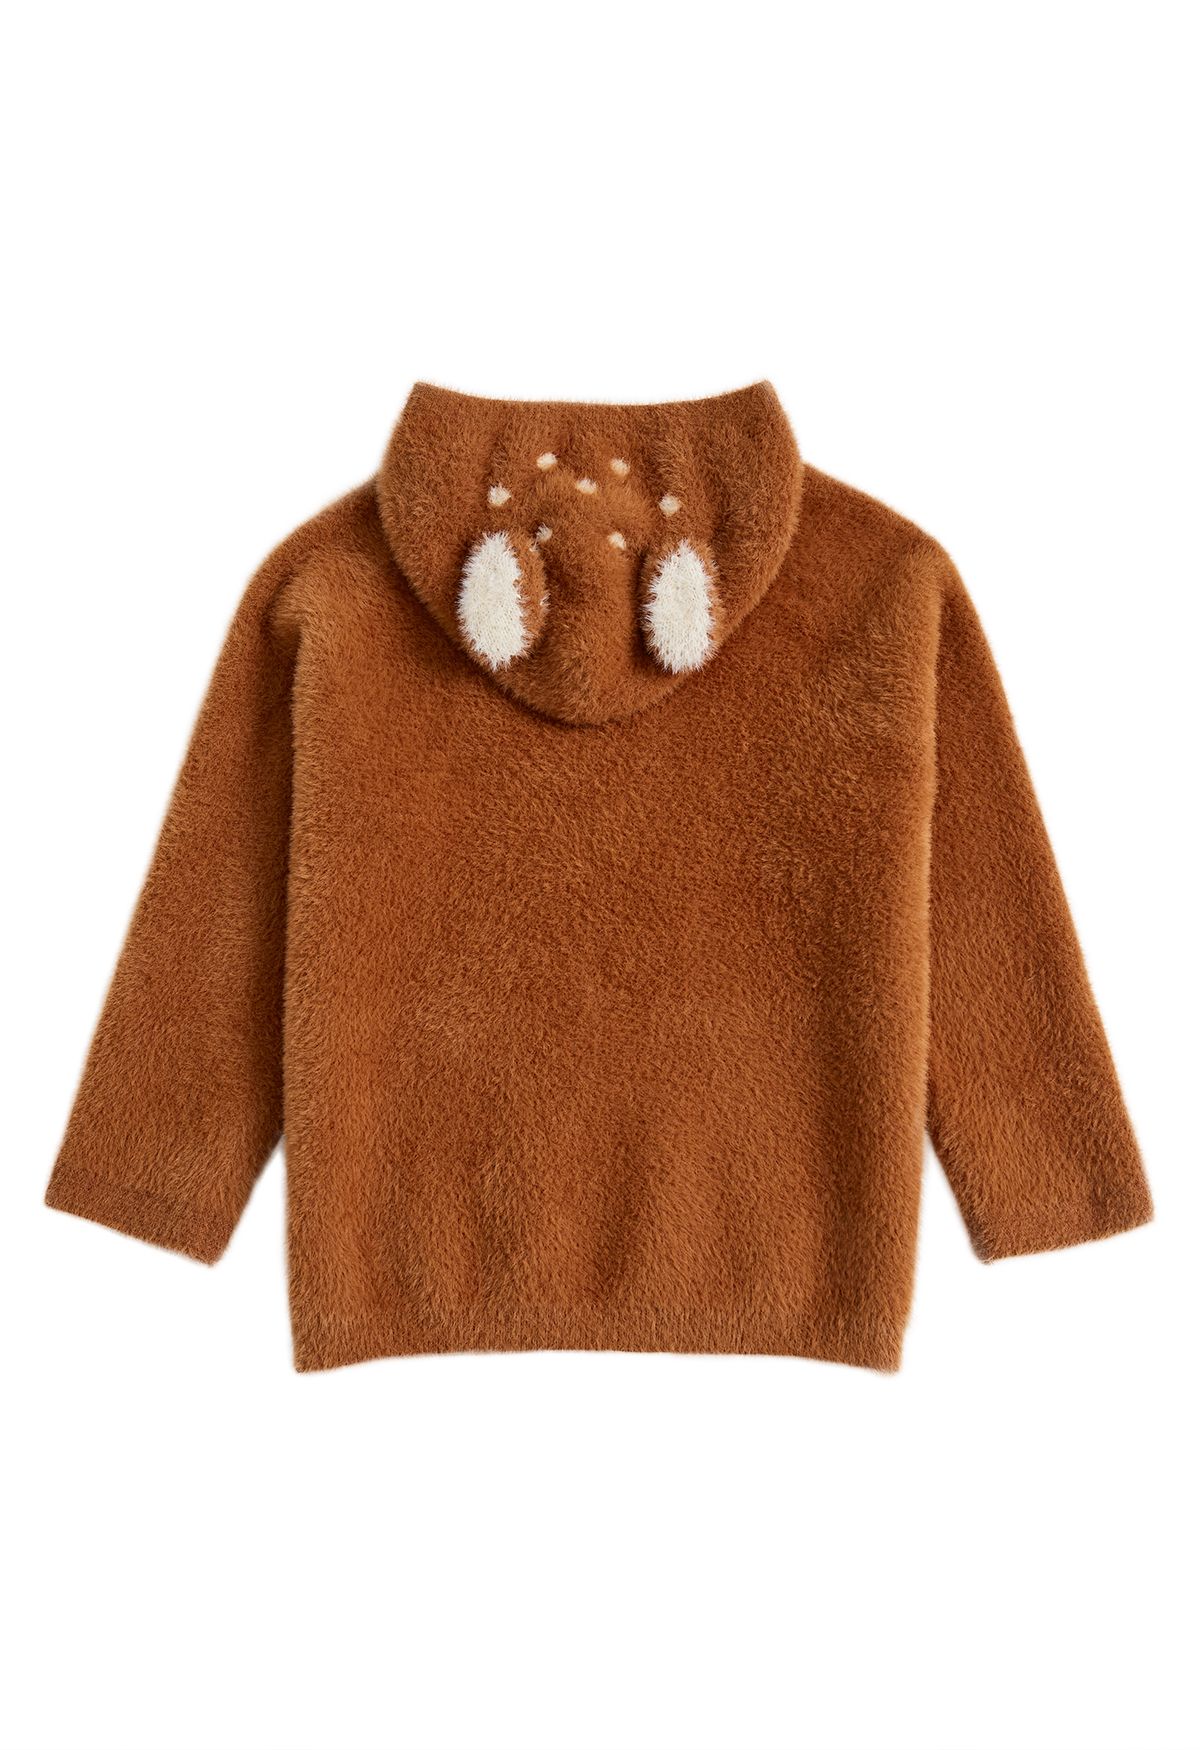 Suéter de malha com capuz Sika Deer Fuzzy em caramelo para crianças